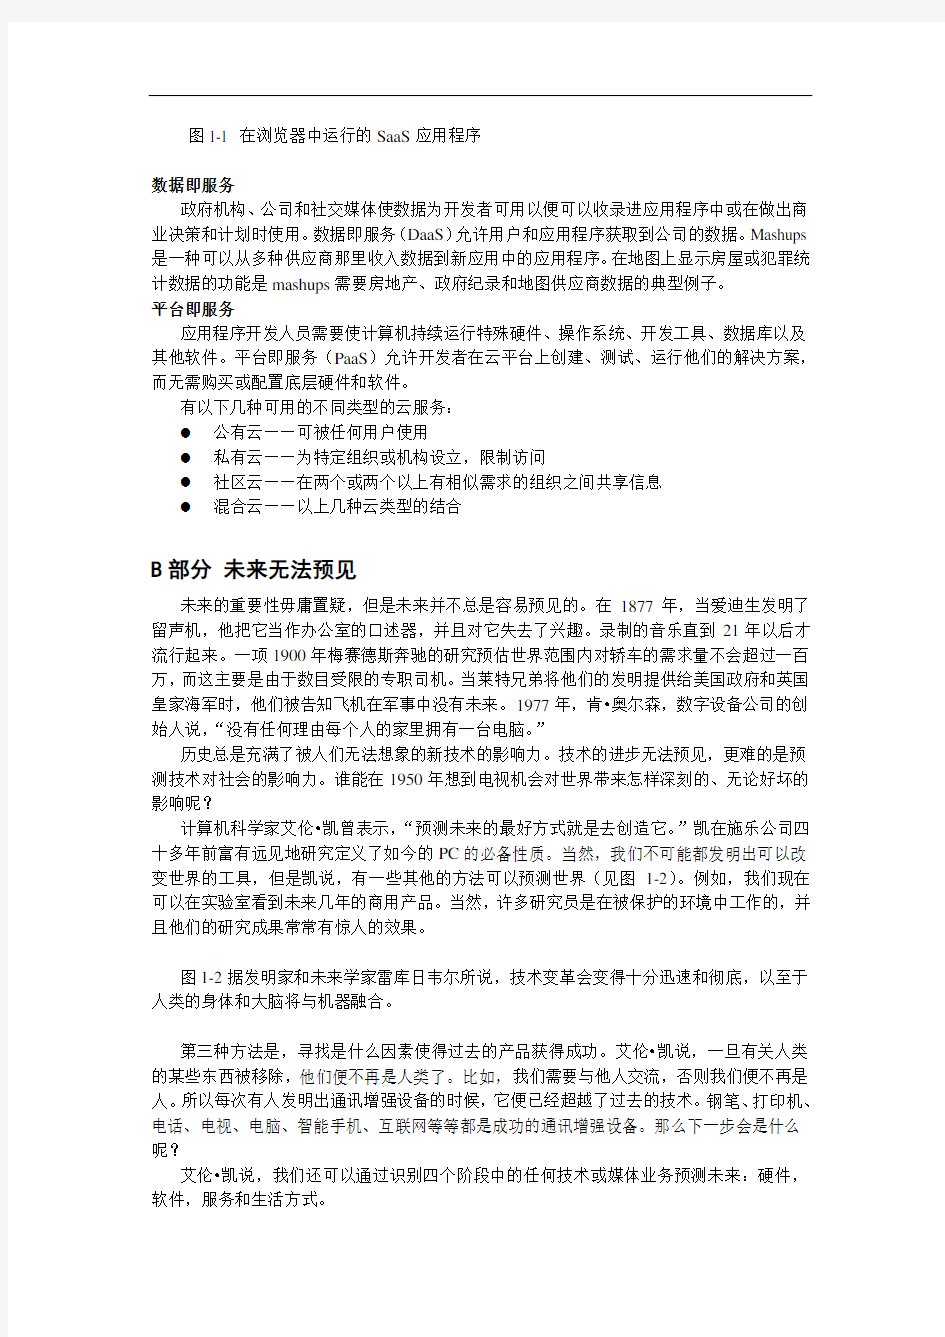 大学实用计算机英语教程第2版翻译机工版译1_中文-1